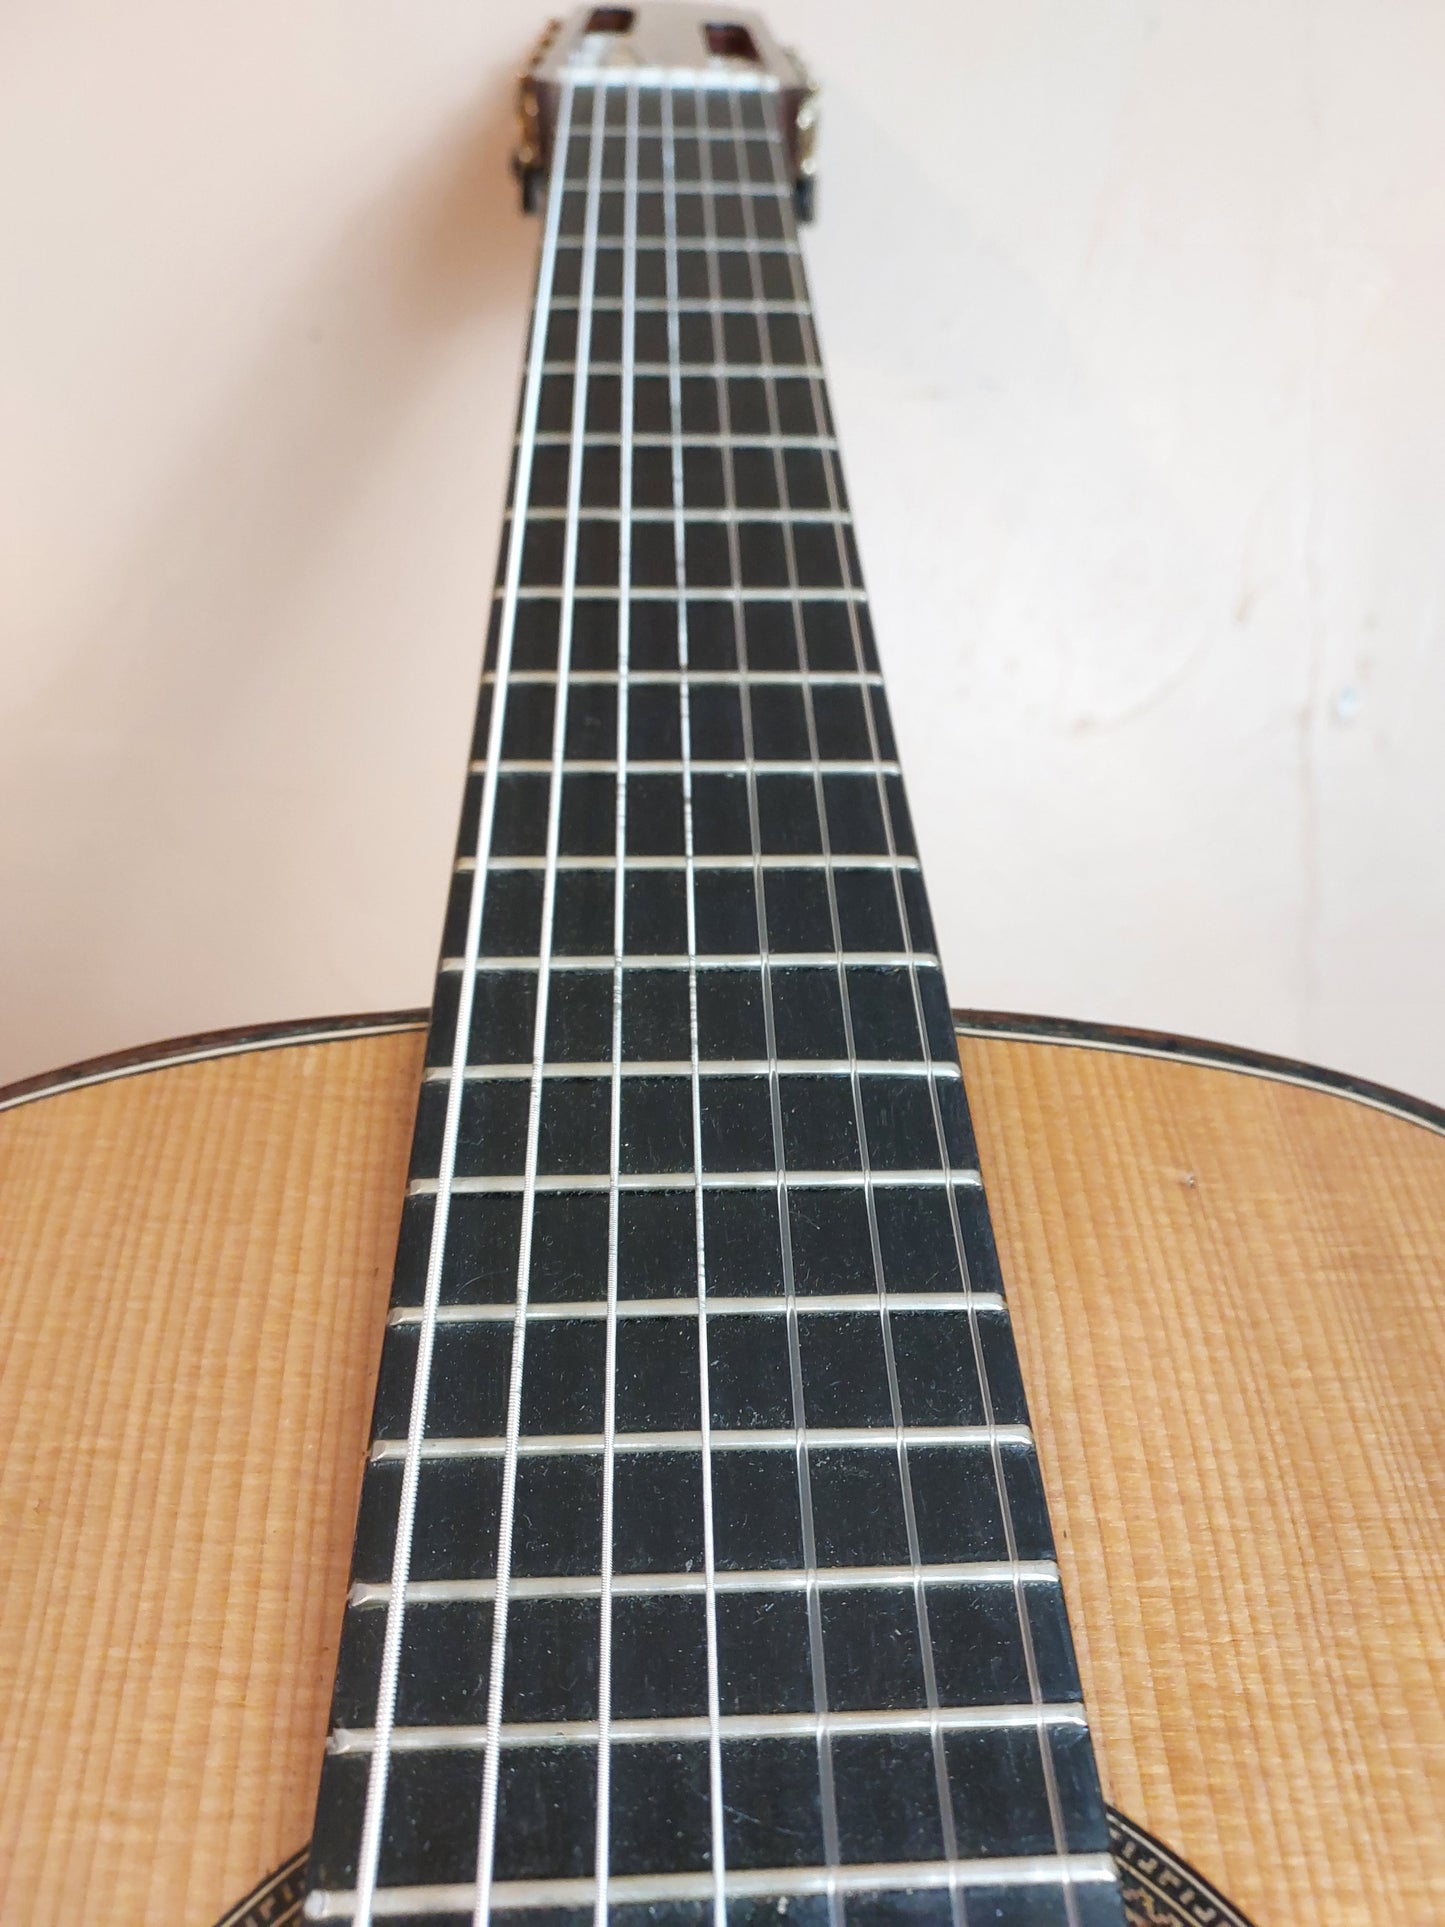 Lucas Bráz 7-String Guitar (nylon strings), 2018 (SOLD)